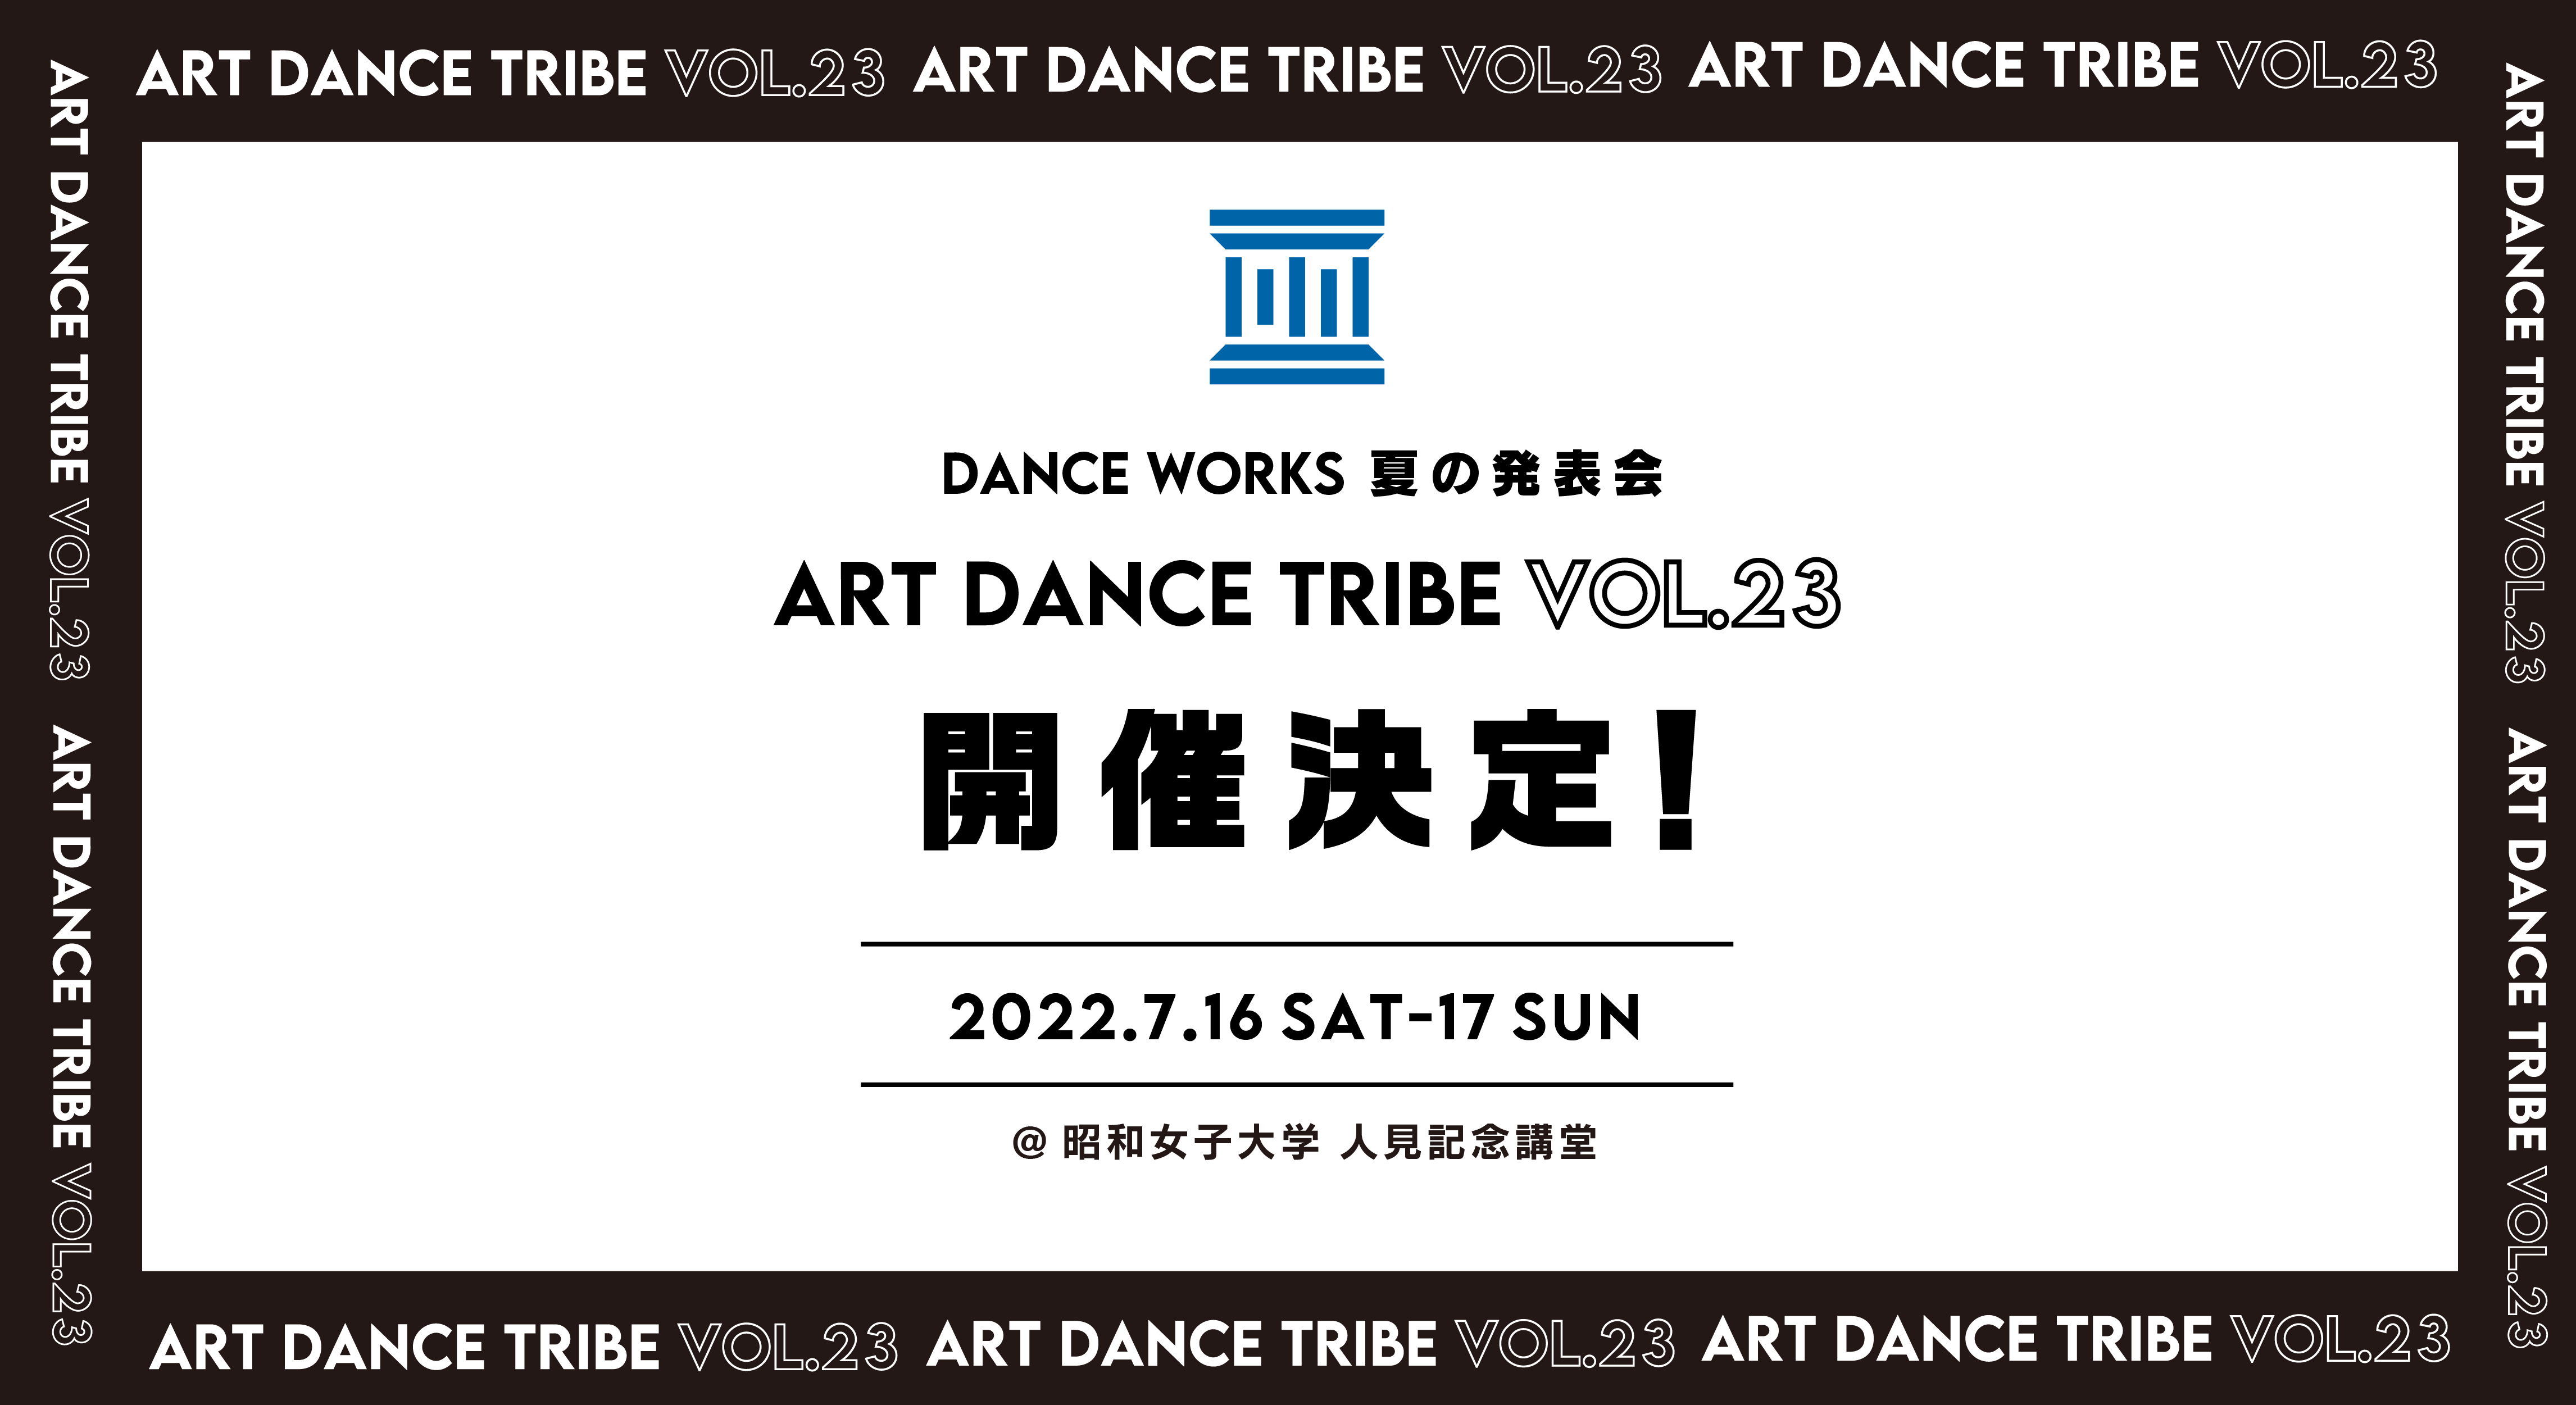 ART DANCE TRIBE vol.23